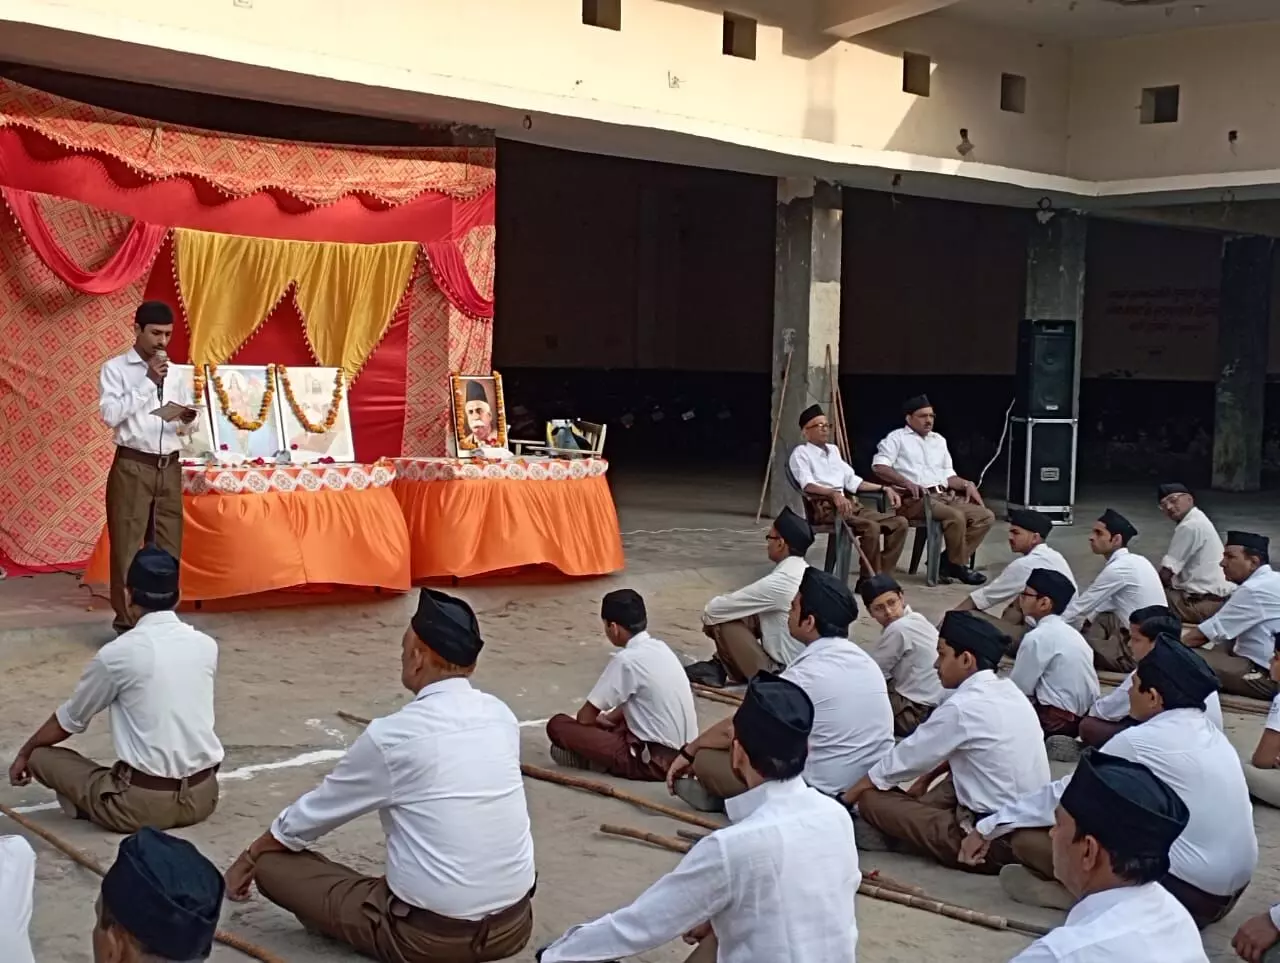 राष्ट्रीय स्वयंसेवक संघ लक्ष्मी नगर के महावीर भाग में वर्ष प्रतिपदा उत्सव एवं परम पूज्य डॉक्टर केशव राम बलिराम हेडगेवार जी का जन्मदिवस धूमधाम से मनाया।